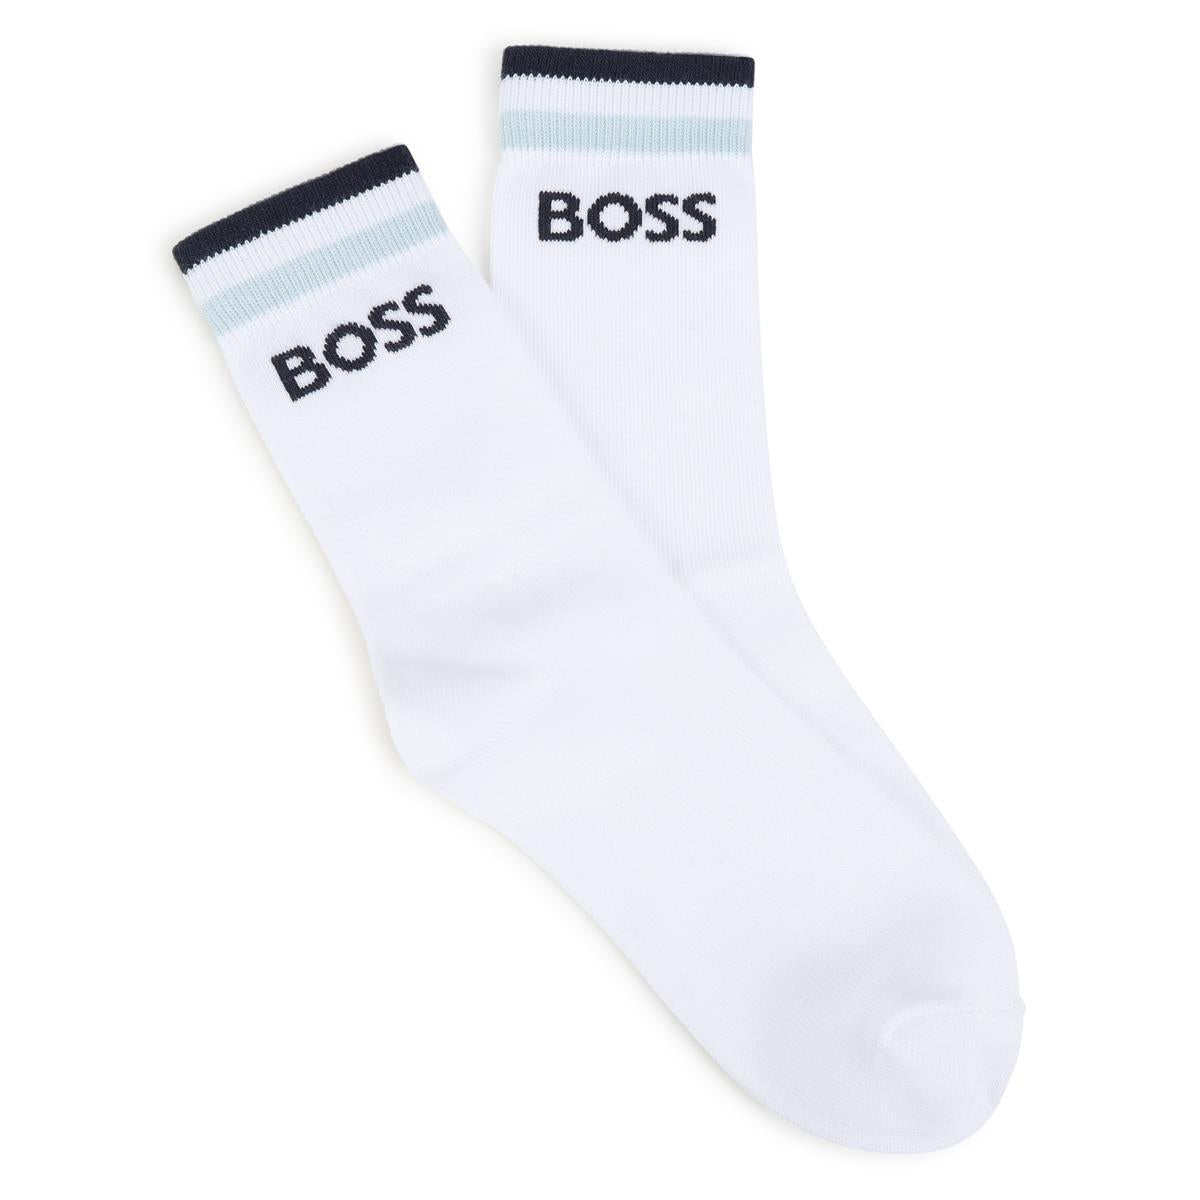 Boys White Cotton Socks Set(2 Pack)